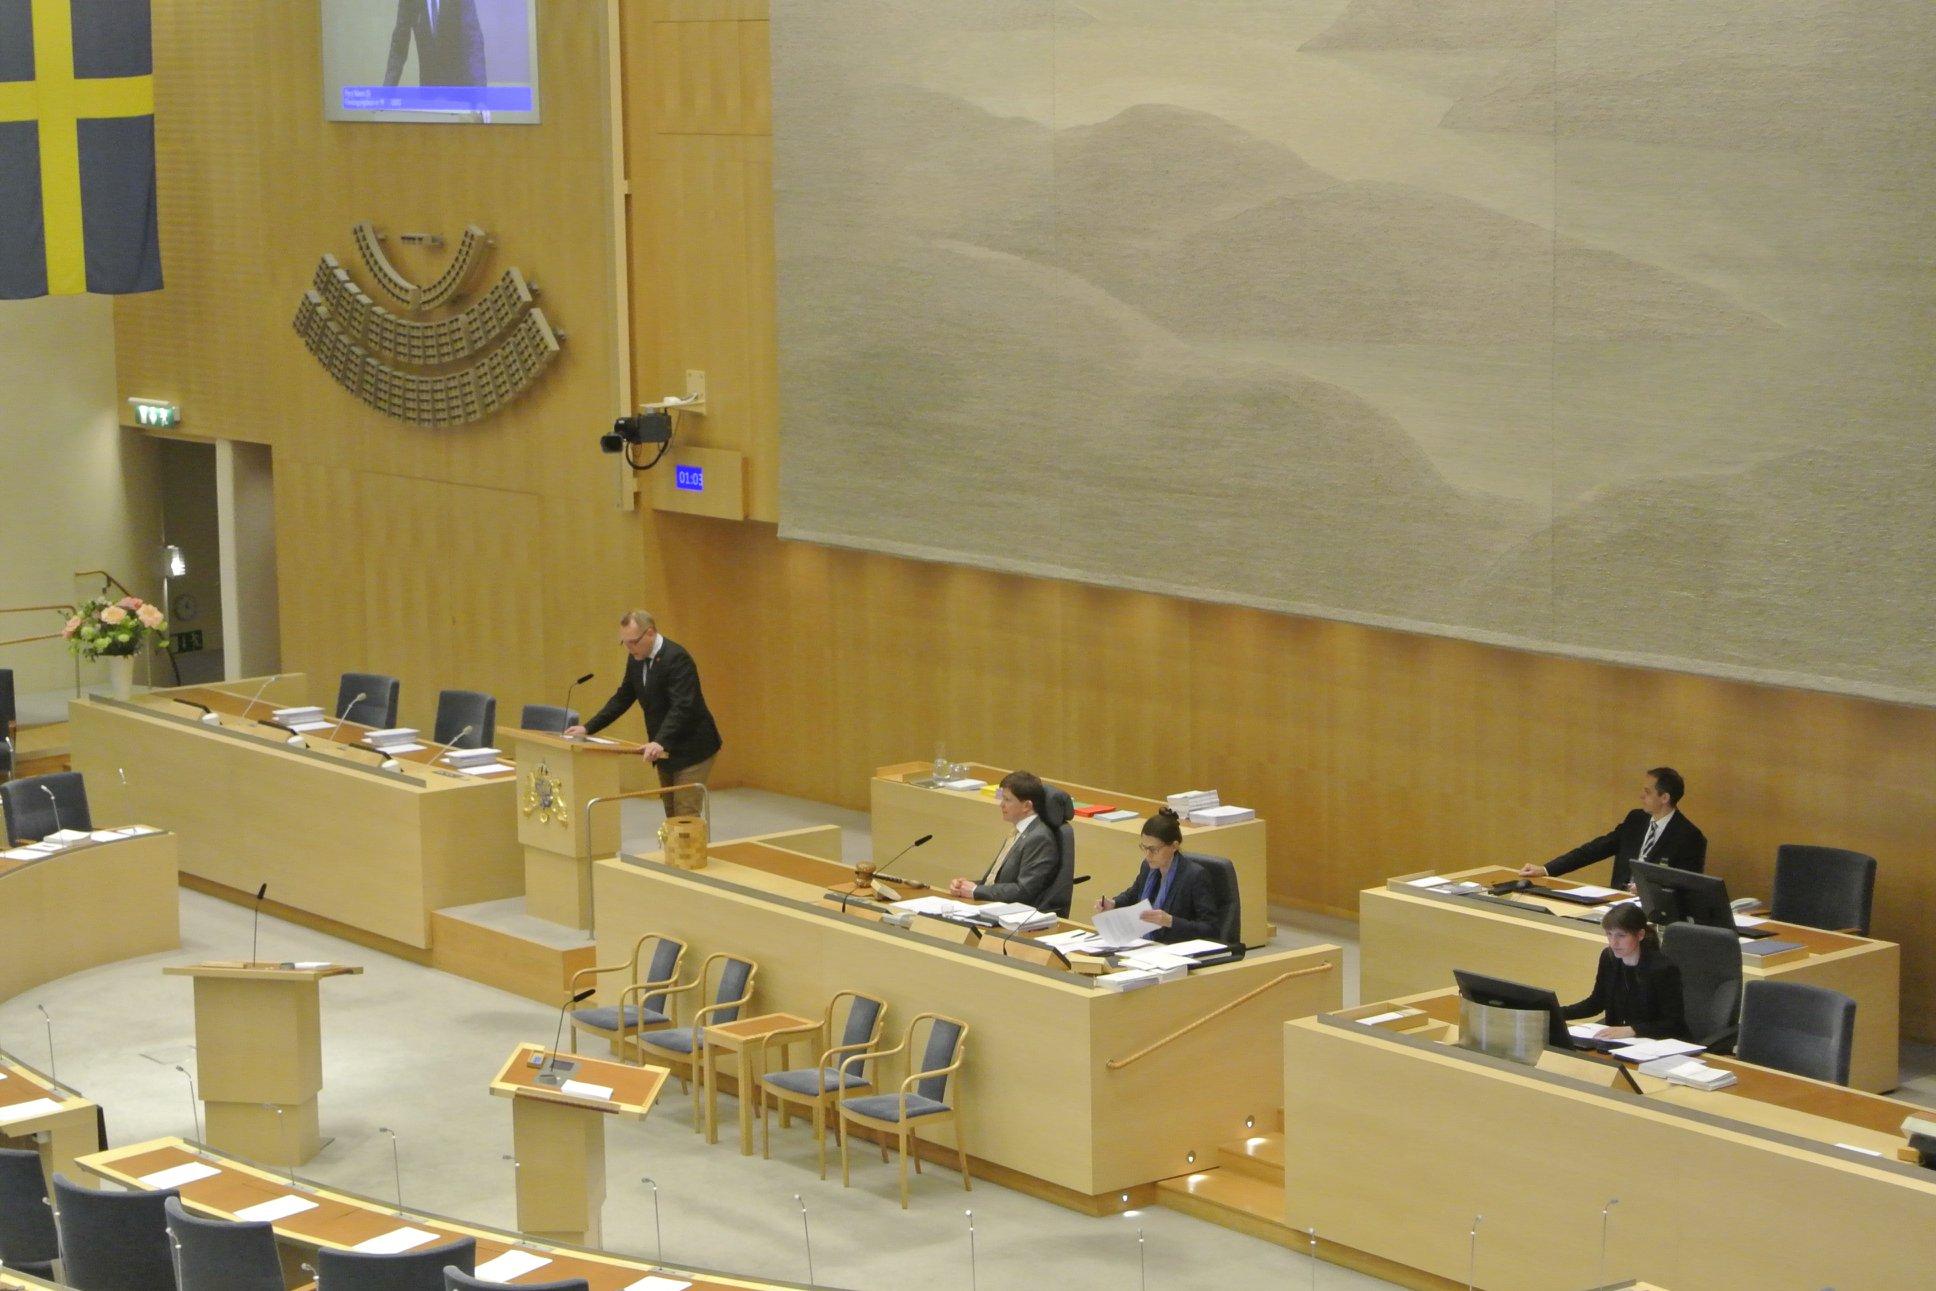 Շվեդիան վավերացրել է ՀՀ-ԵՄ համաձայնագիրը